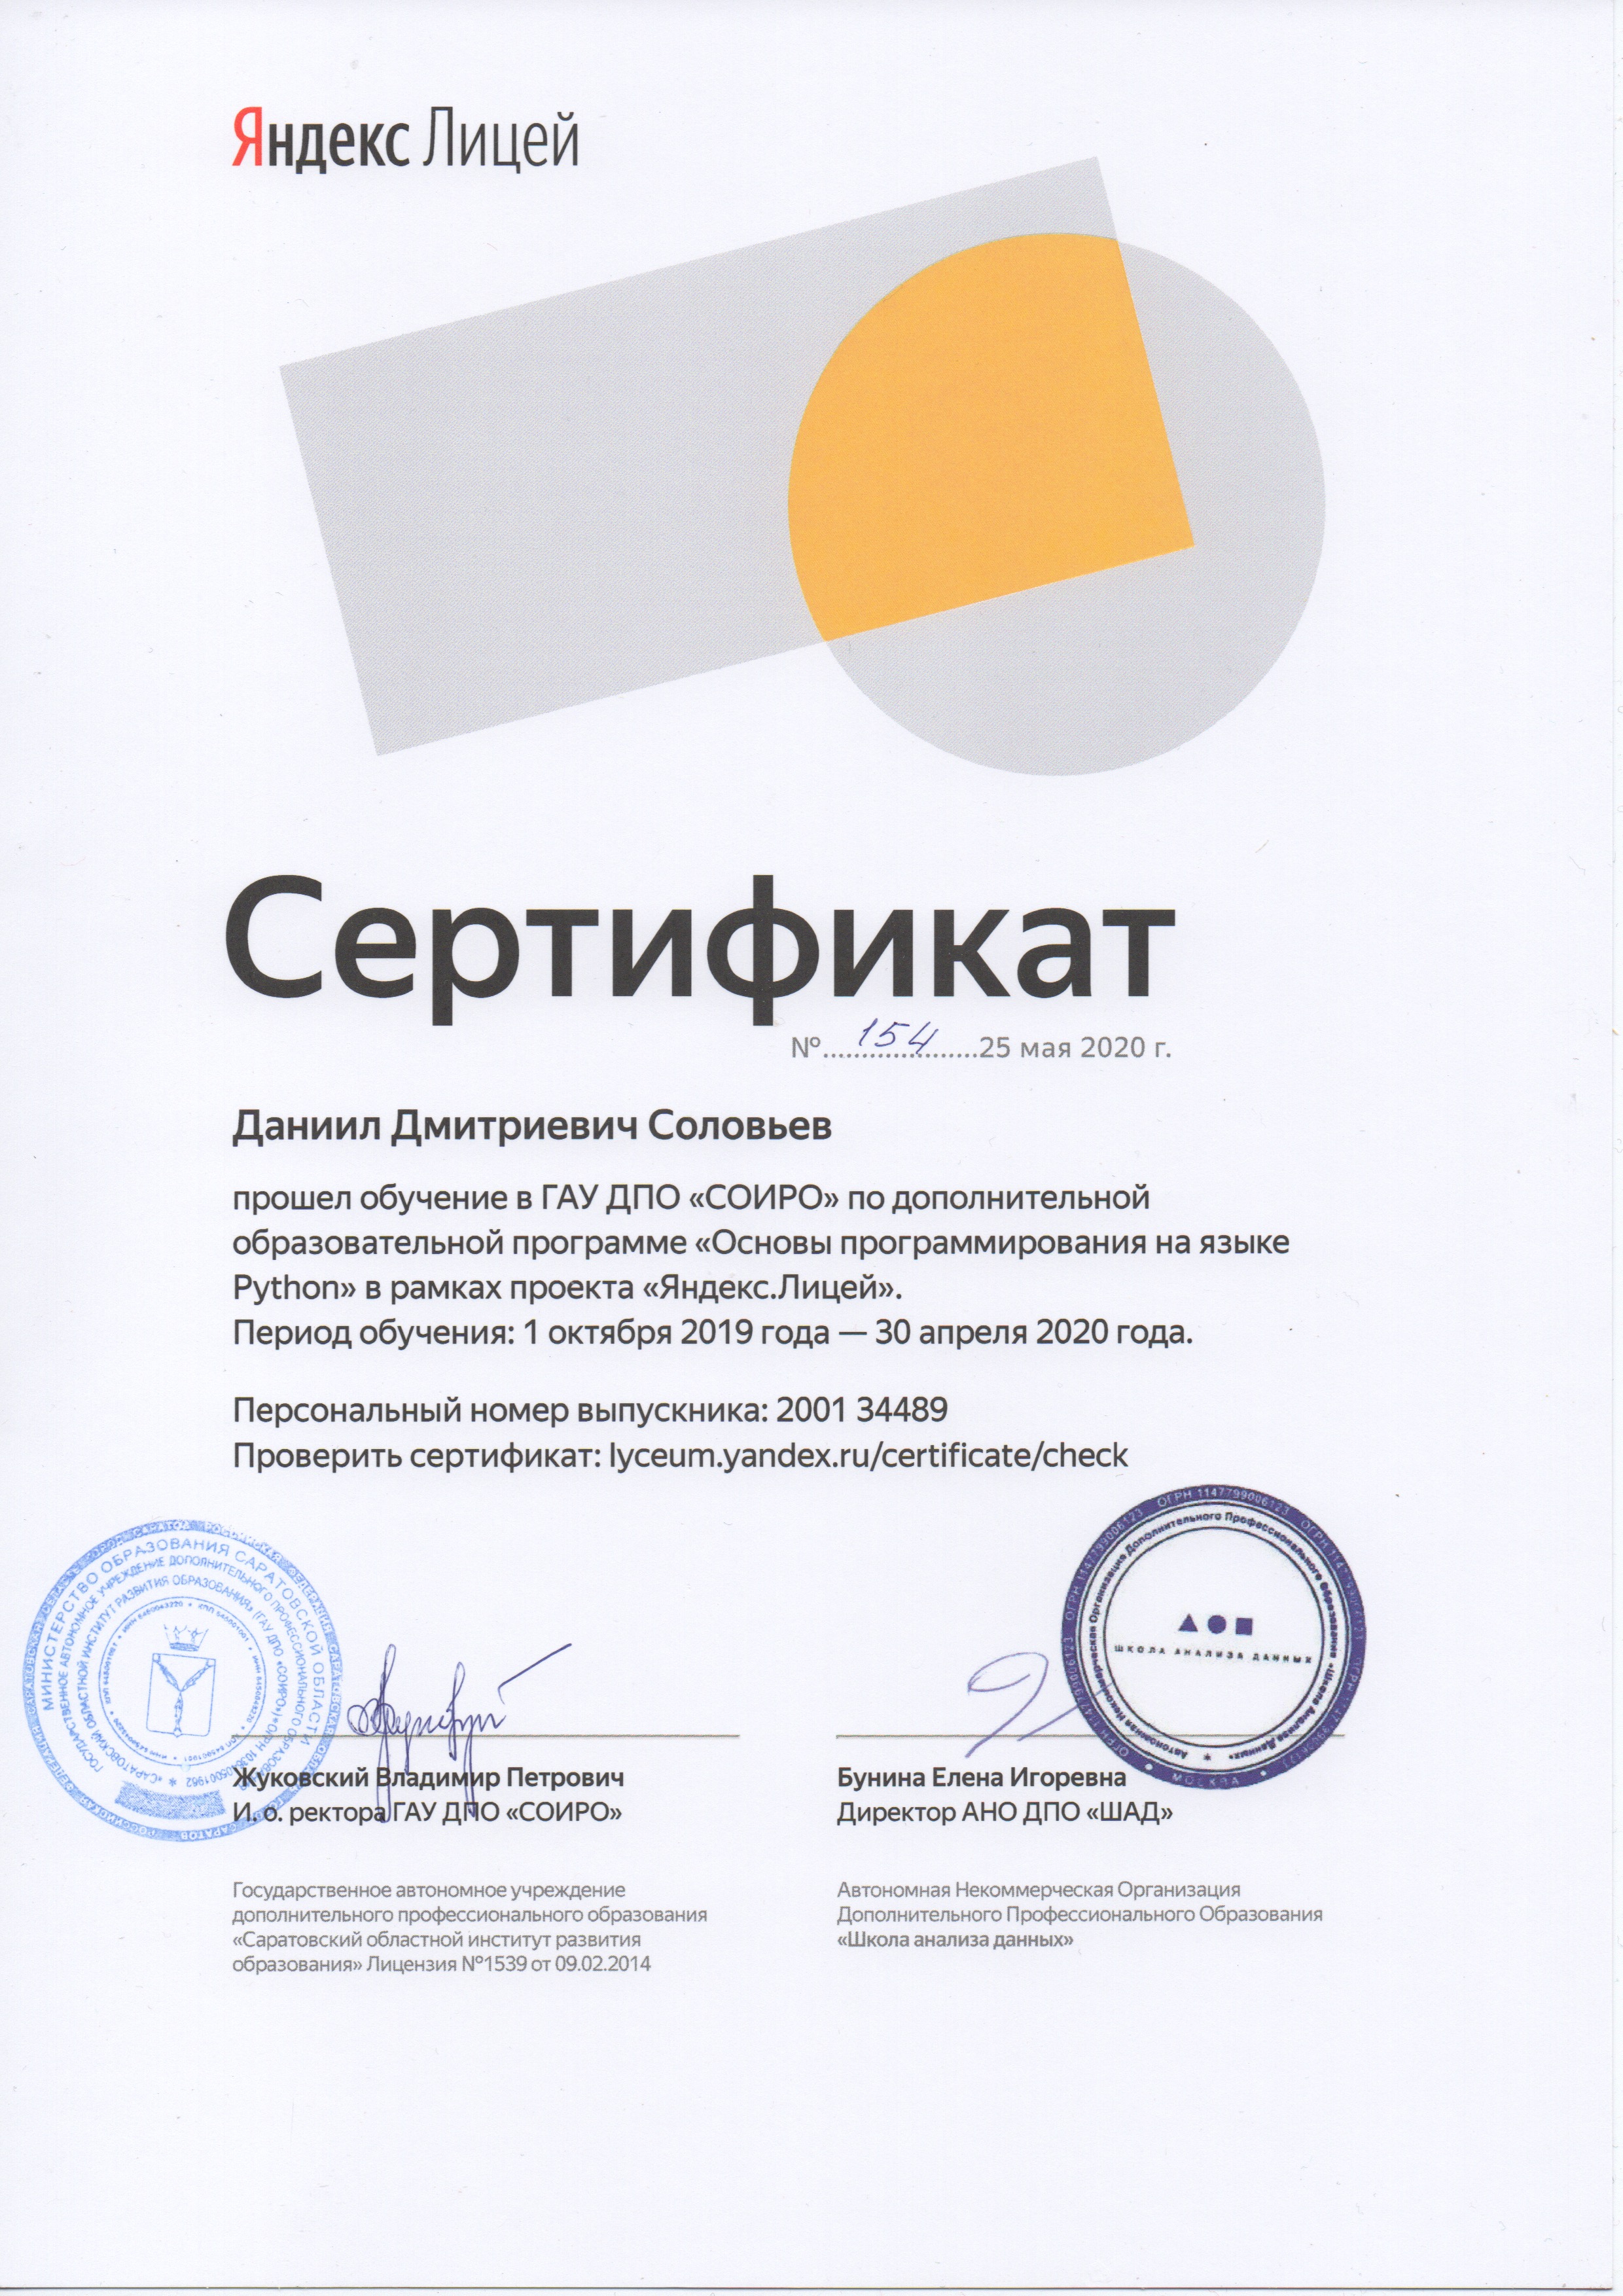 сертификат Яндекс Лицея